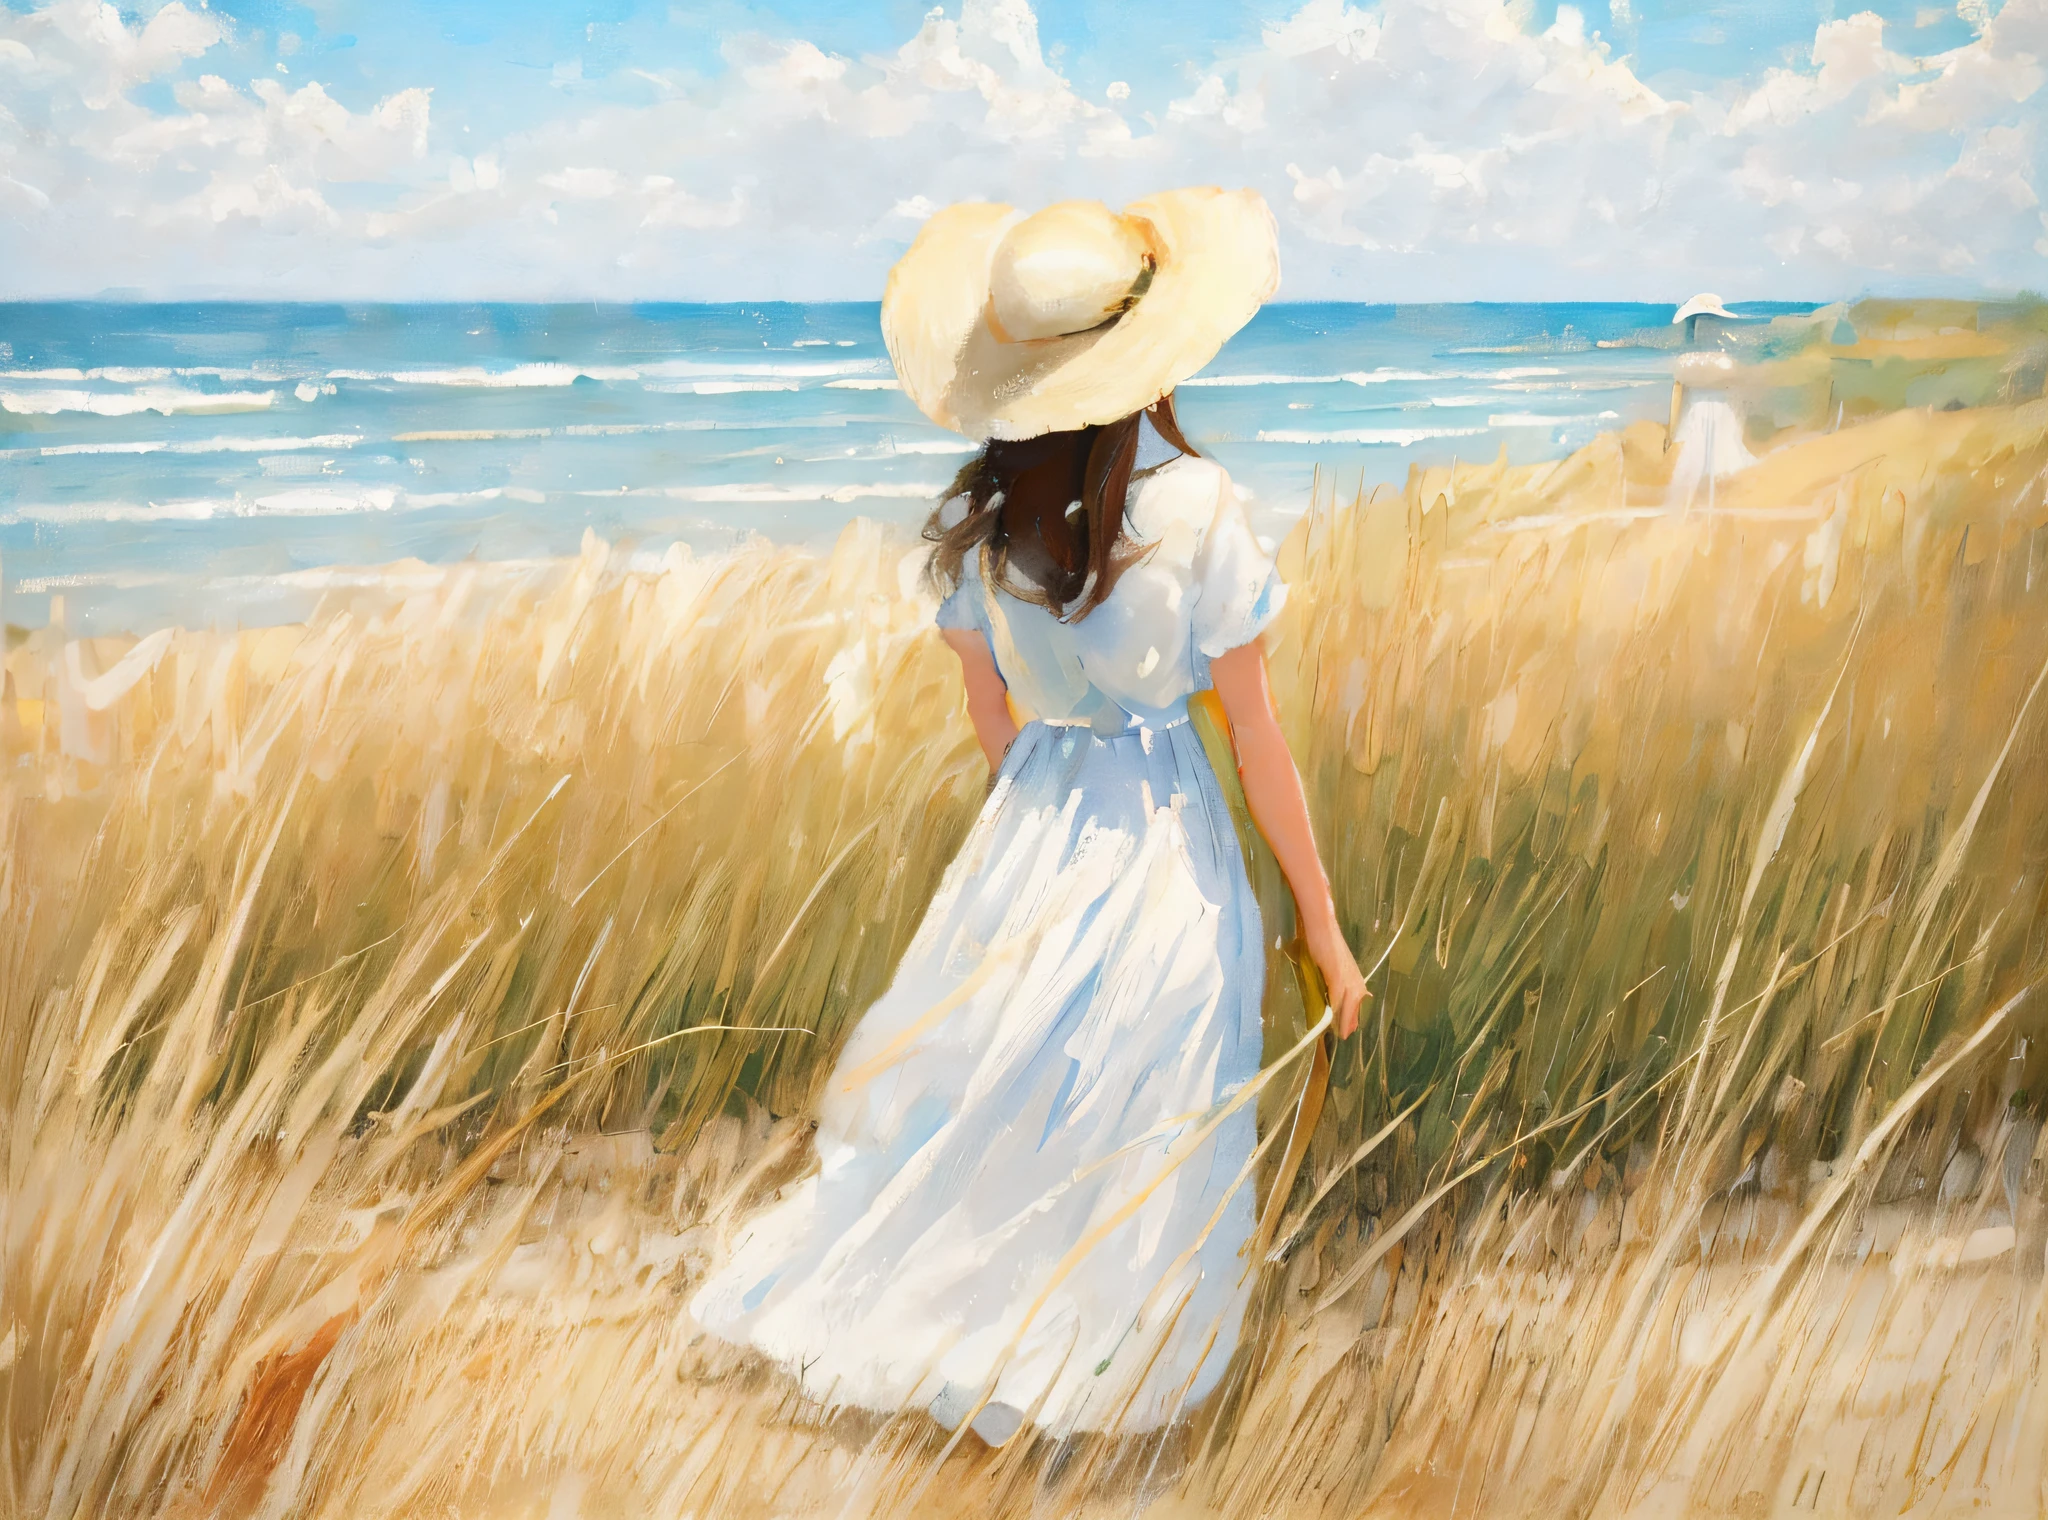 畫一個穿著白裙子、戴帽子的女人走在高高的草叢中, 霧面畫布上的油畫, 布面油画, 帶著草帽, 畫布上美麗的油畫, 靠近大海, 行走在沙丘之间的女孩, 灵感来自亨丽埃特·怀斯, 現代風格油畫, 美术油画, 海灘上的女人, 海灘上的女孩